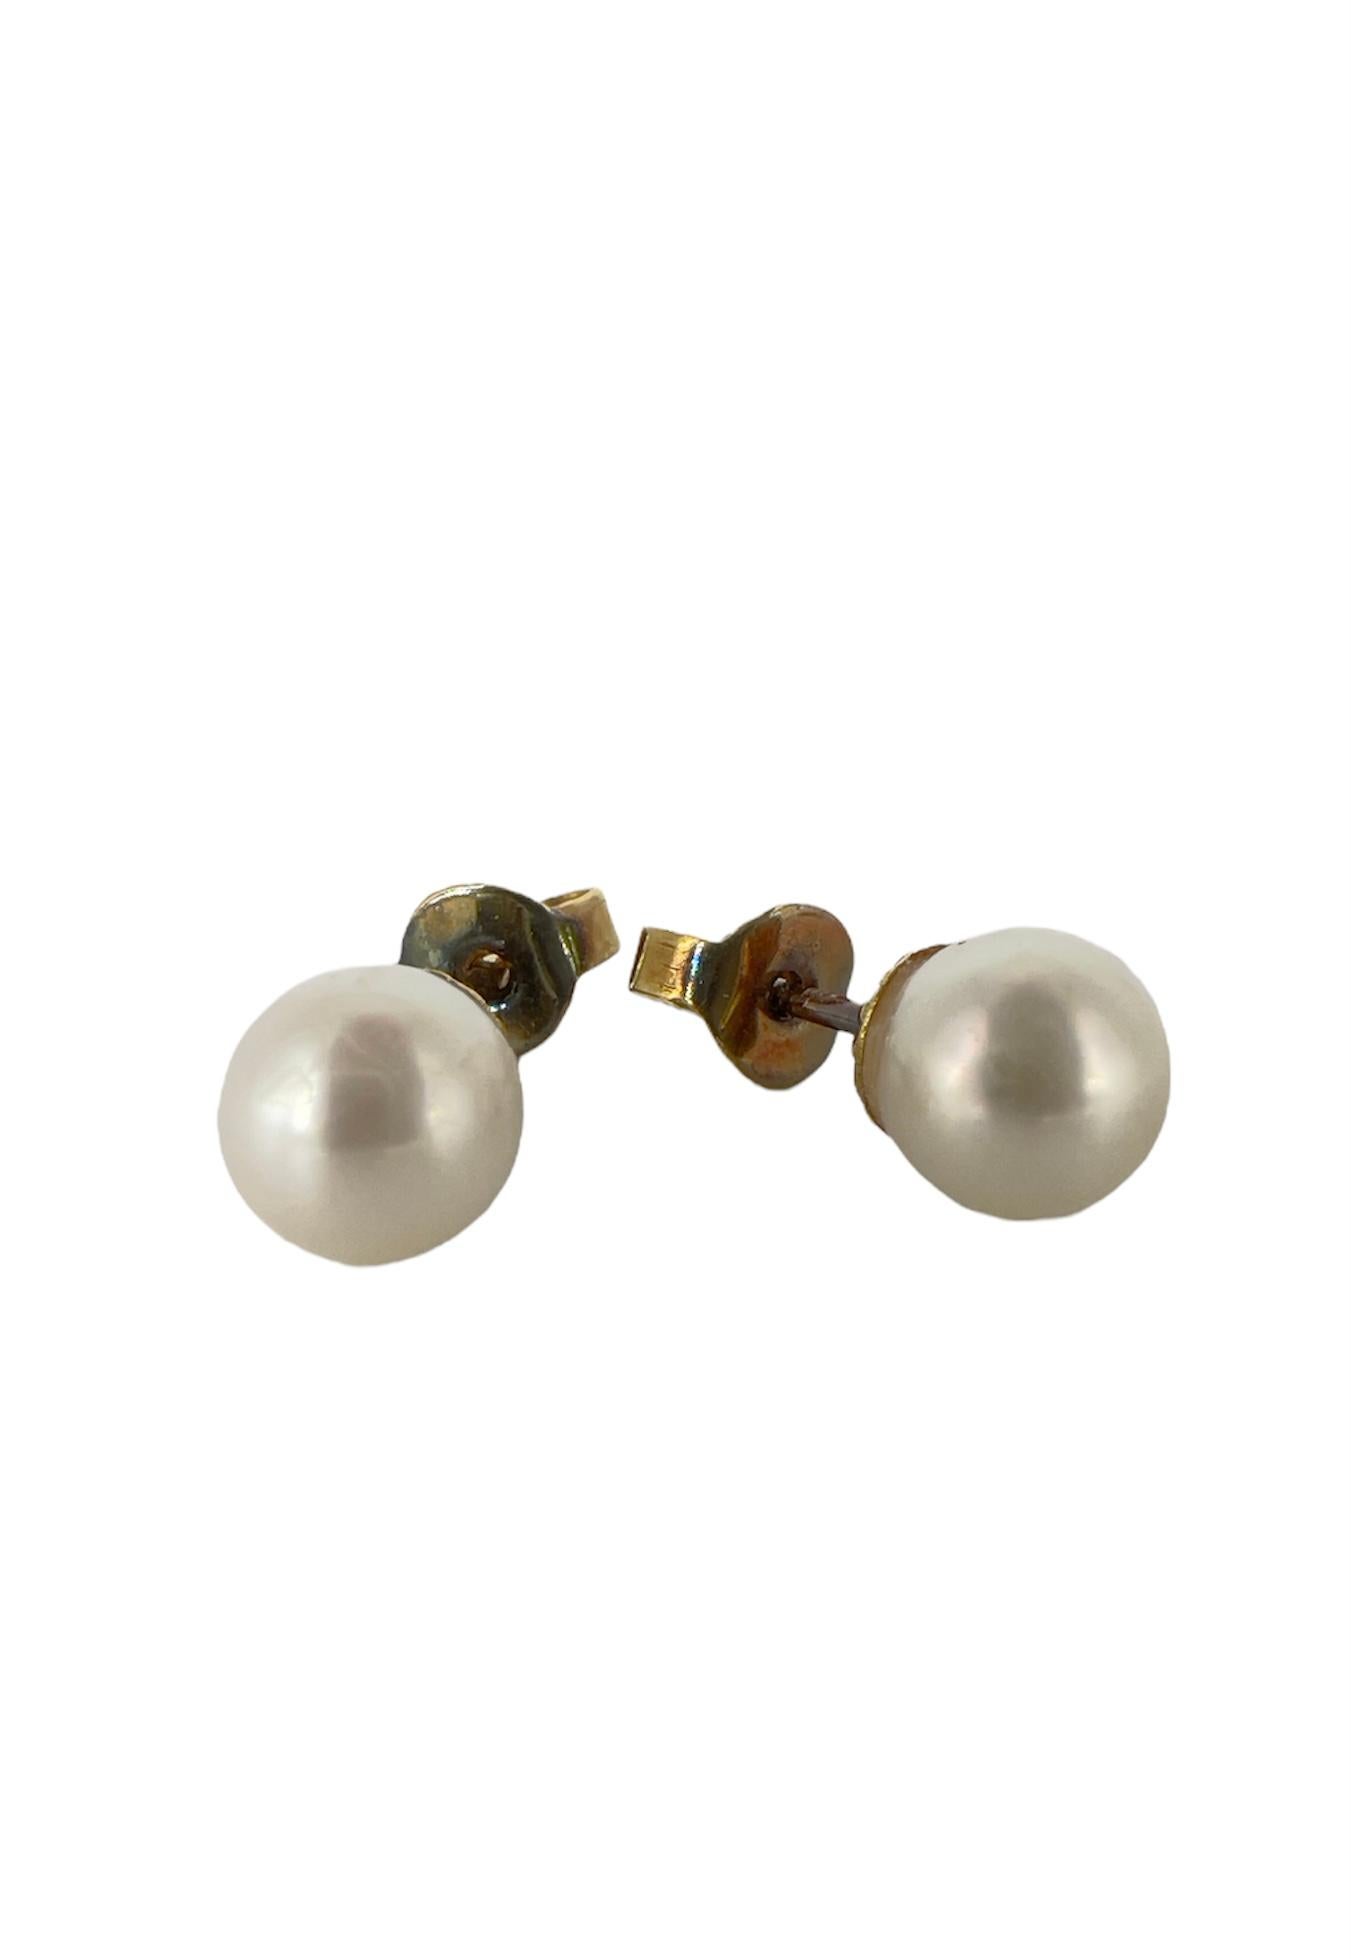 Ces boucles d'oreilles proviennent d'une maison de vente aux enchères à Genève, en Suisse. 
C'est la marque Bucherer, des horlogers et bijoutiers suisses. 
Il contient de l'or 750 et des perles de culture. Il est vendu dans sa boîte d'origine. 